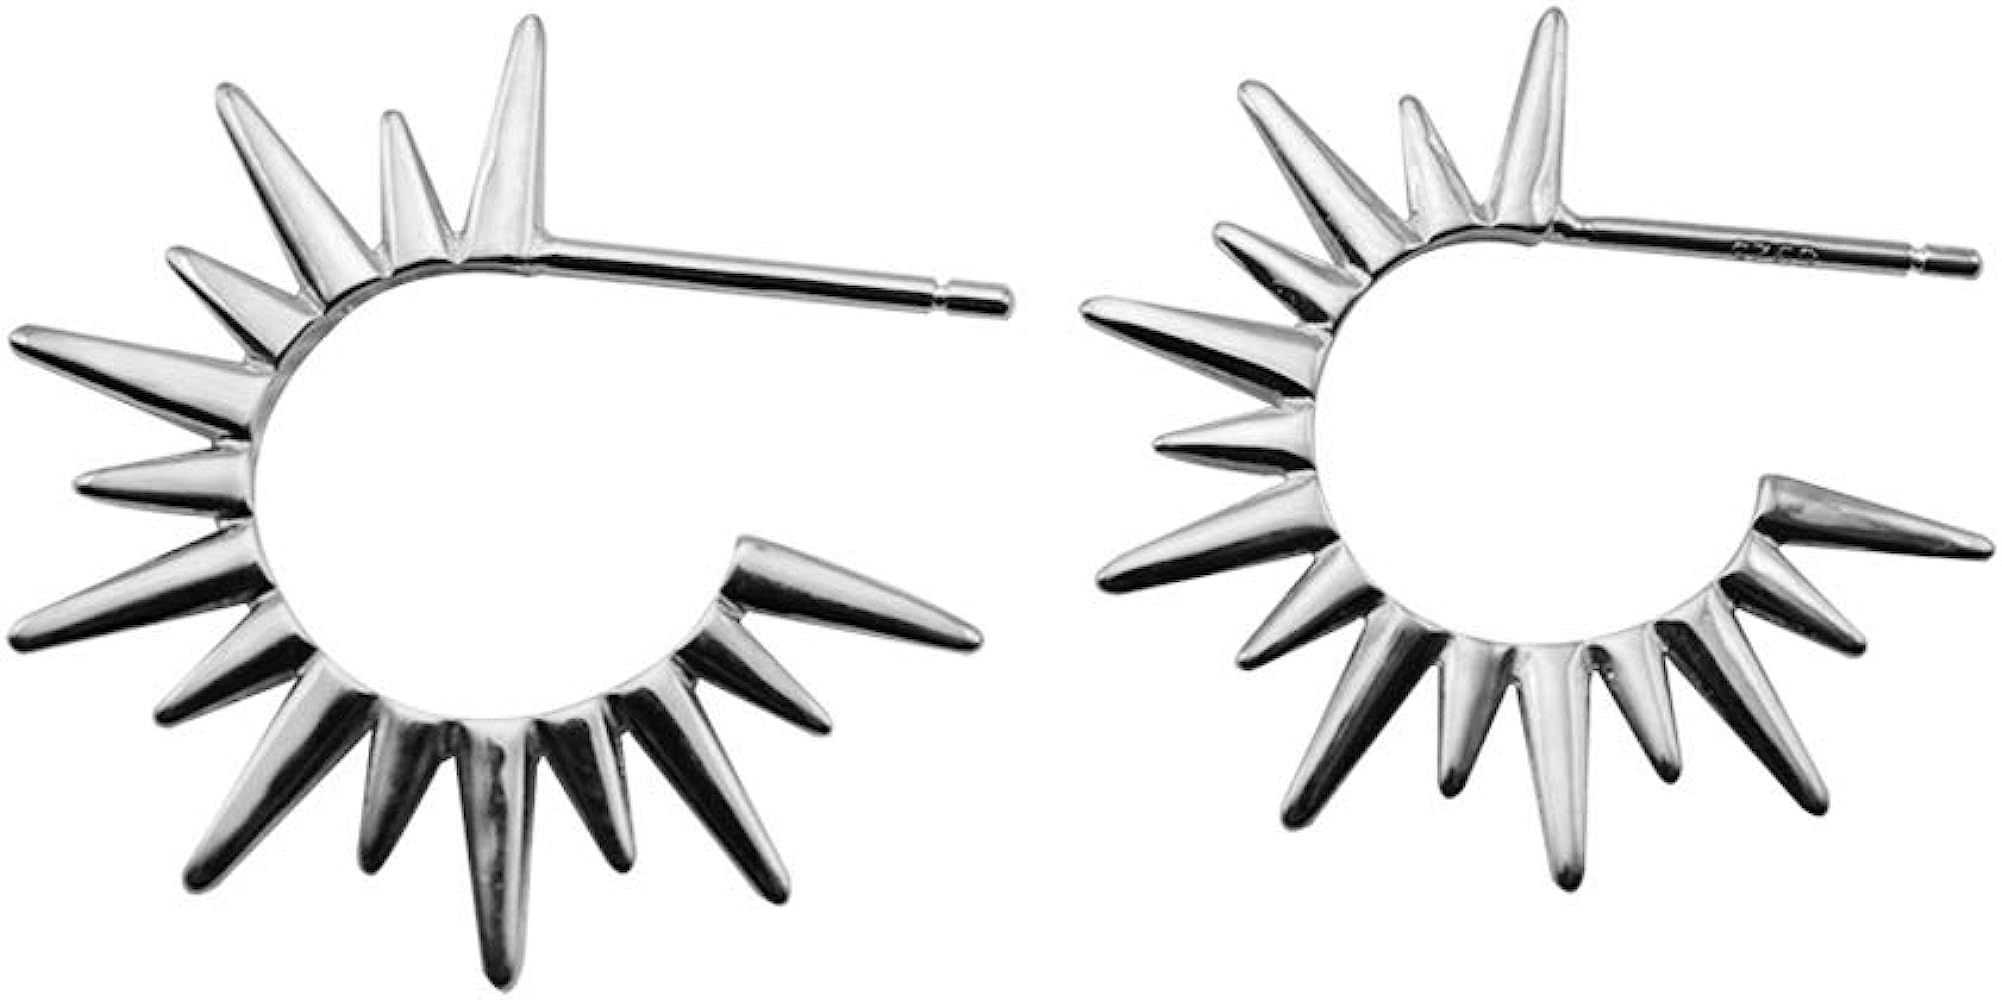 Punk Spike Sunlight Stud Small Hoop Earrings for Women Girls S925 Sterling Silver Fashion Open Hoops | Amazon (US)